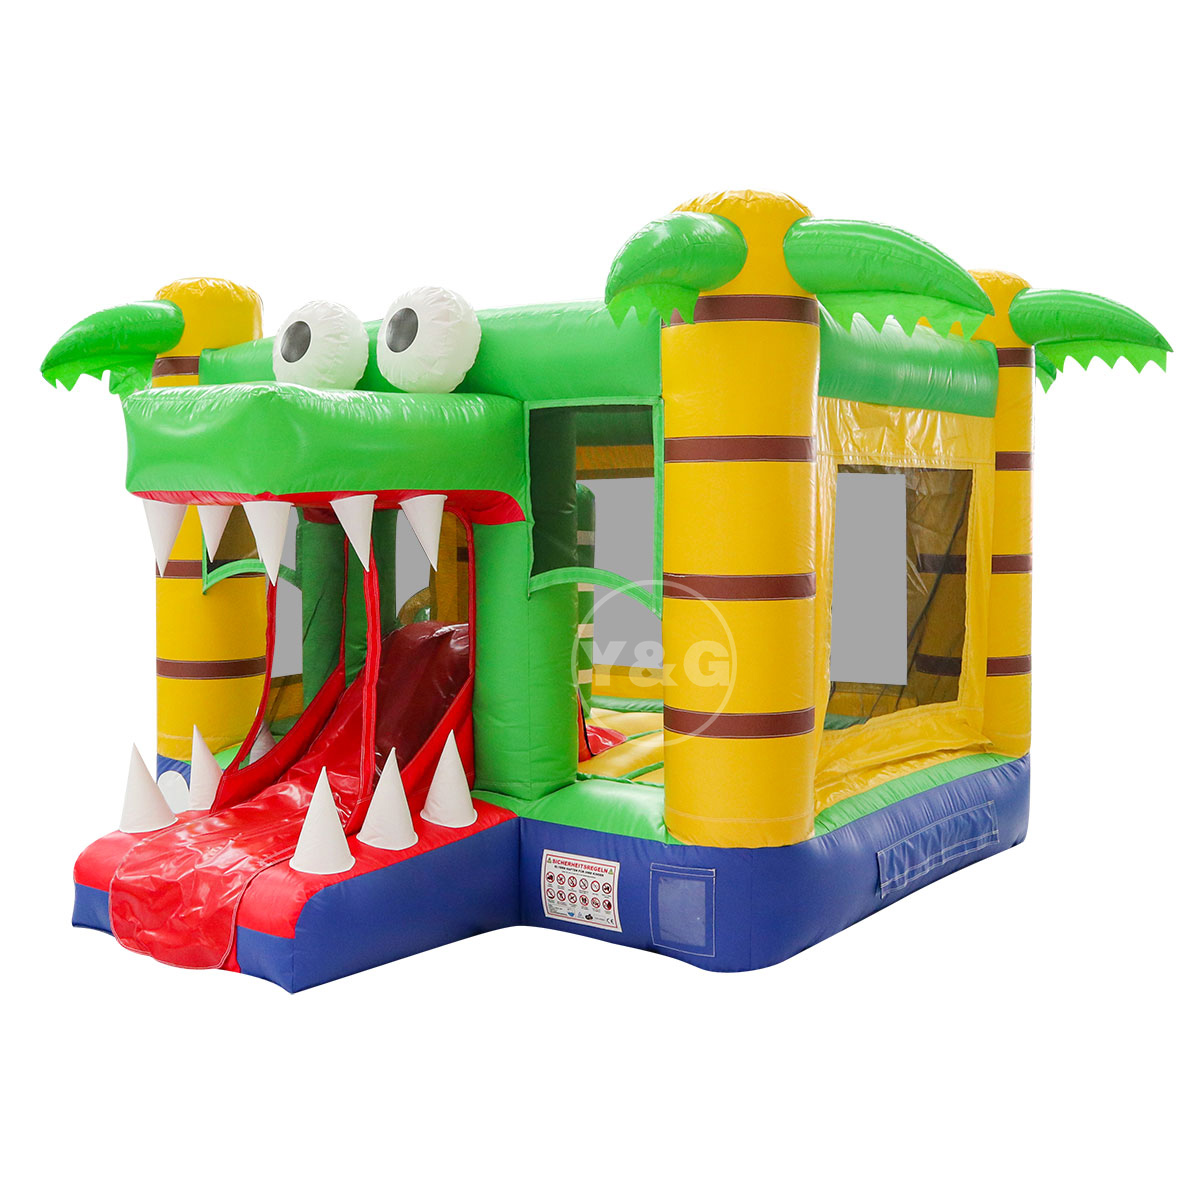 Inflatable crocodile bounce houseYG-140